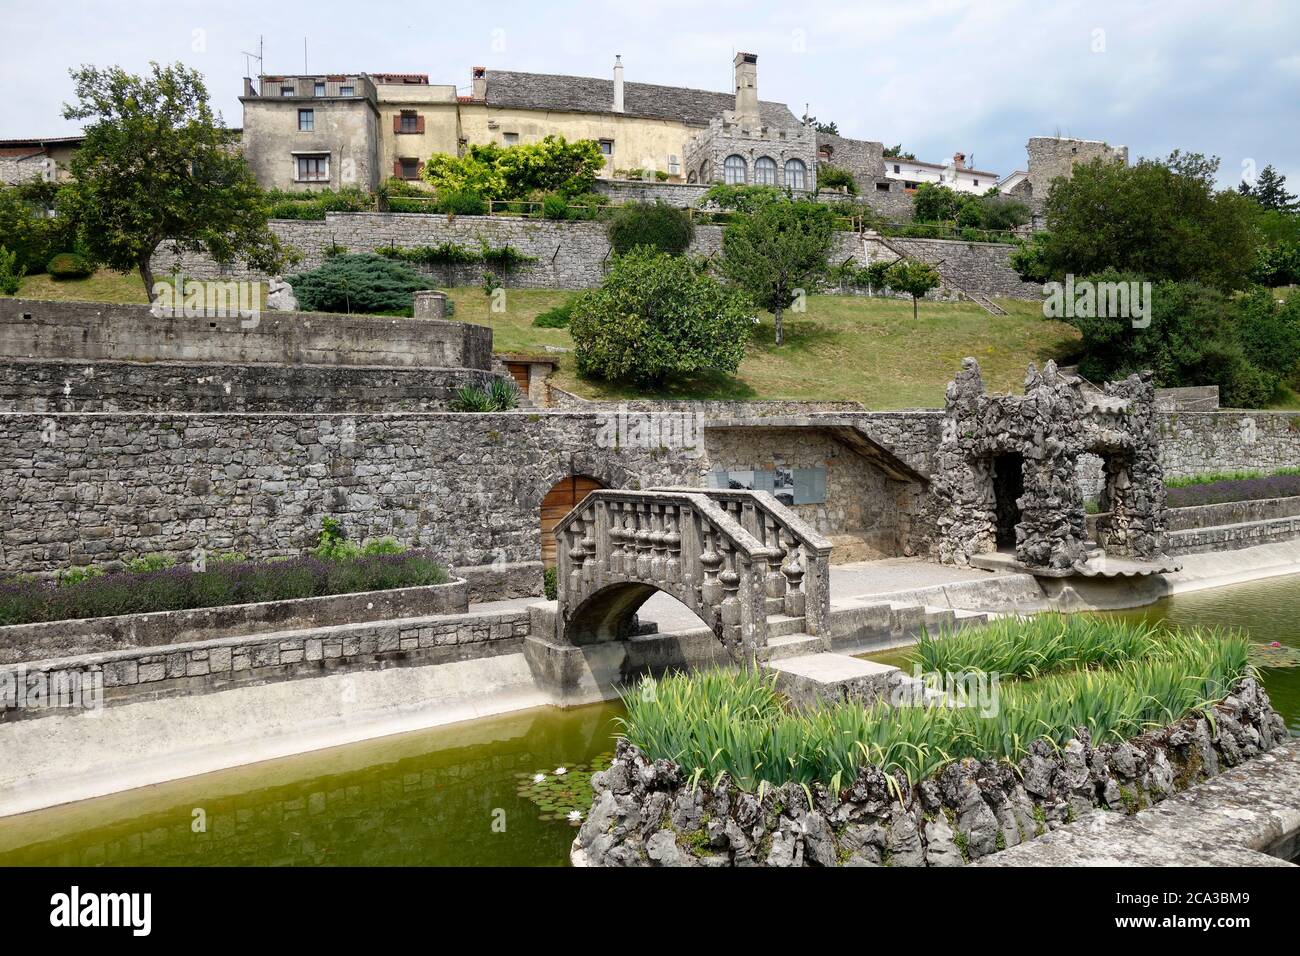 Štanjel, renovado castillo medieval. Vista desde el parque en el patio trasero. Municipio de Komen, región de Kras, Eslovenia. Foto de stock